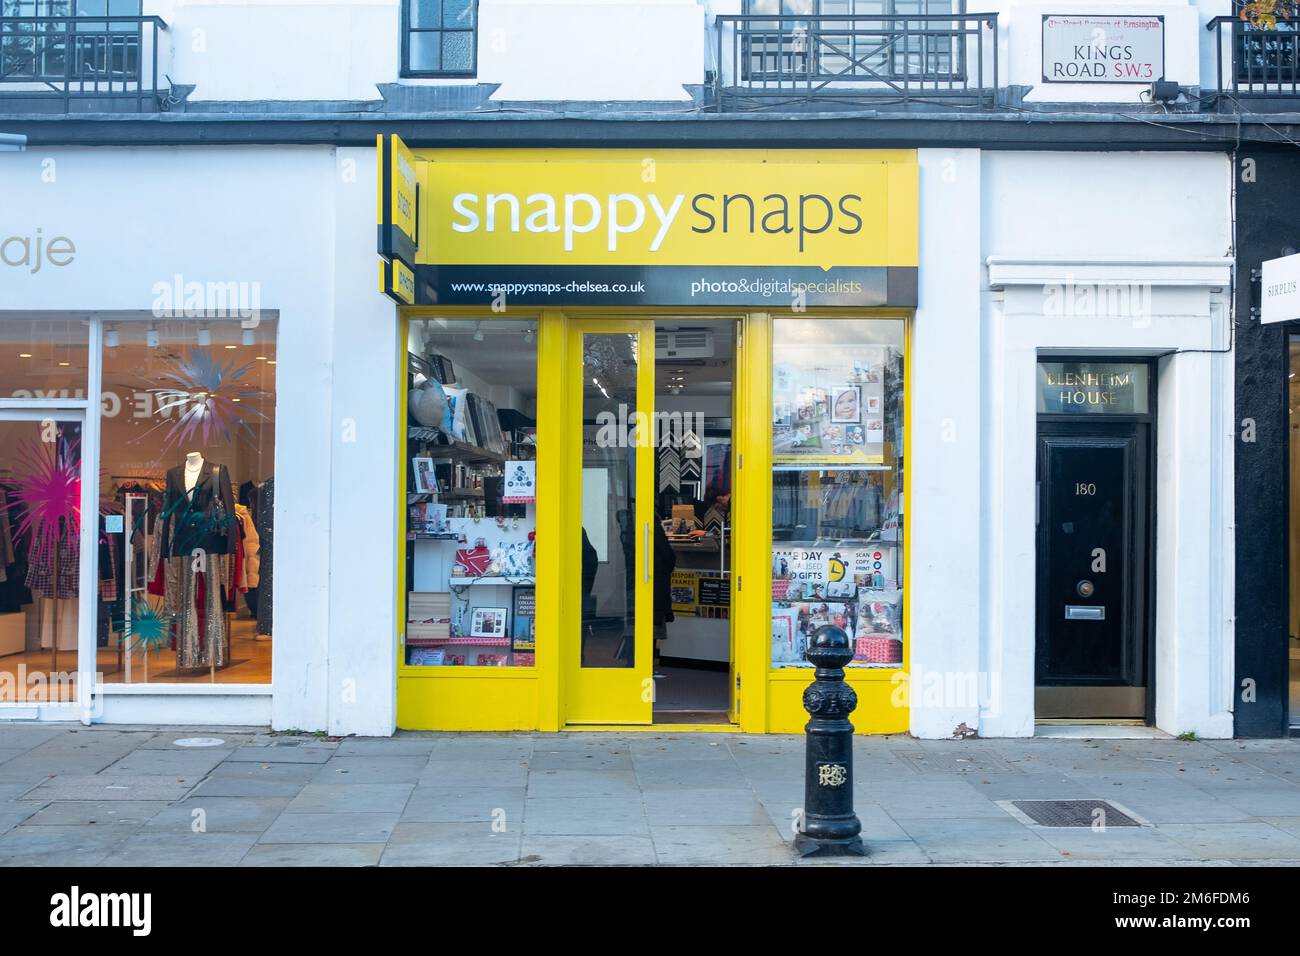 Londra - Dicembre 2022: Snappy Snaps negozio su Kings Road Chelsea, una franchising di servizi fotografici britannici con molti negozi di alta strada in tutto il Regno Unito Foto Stock